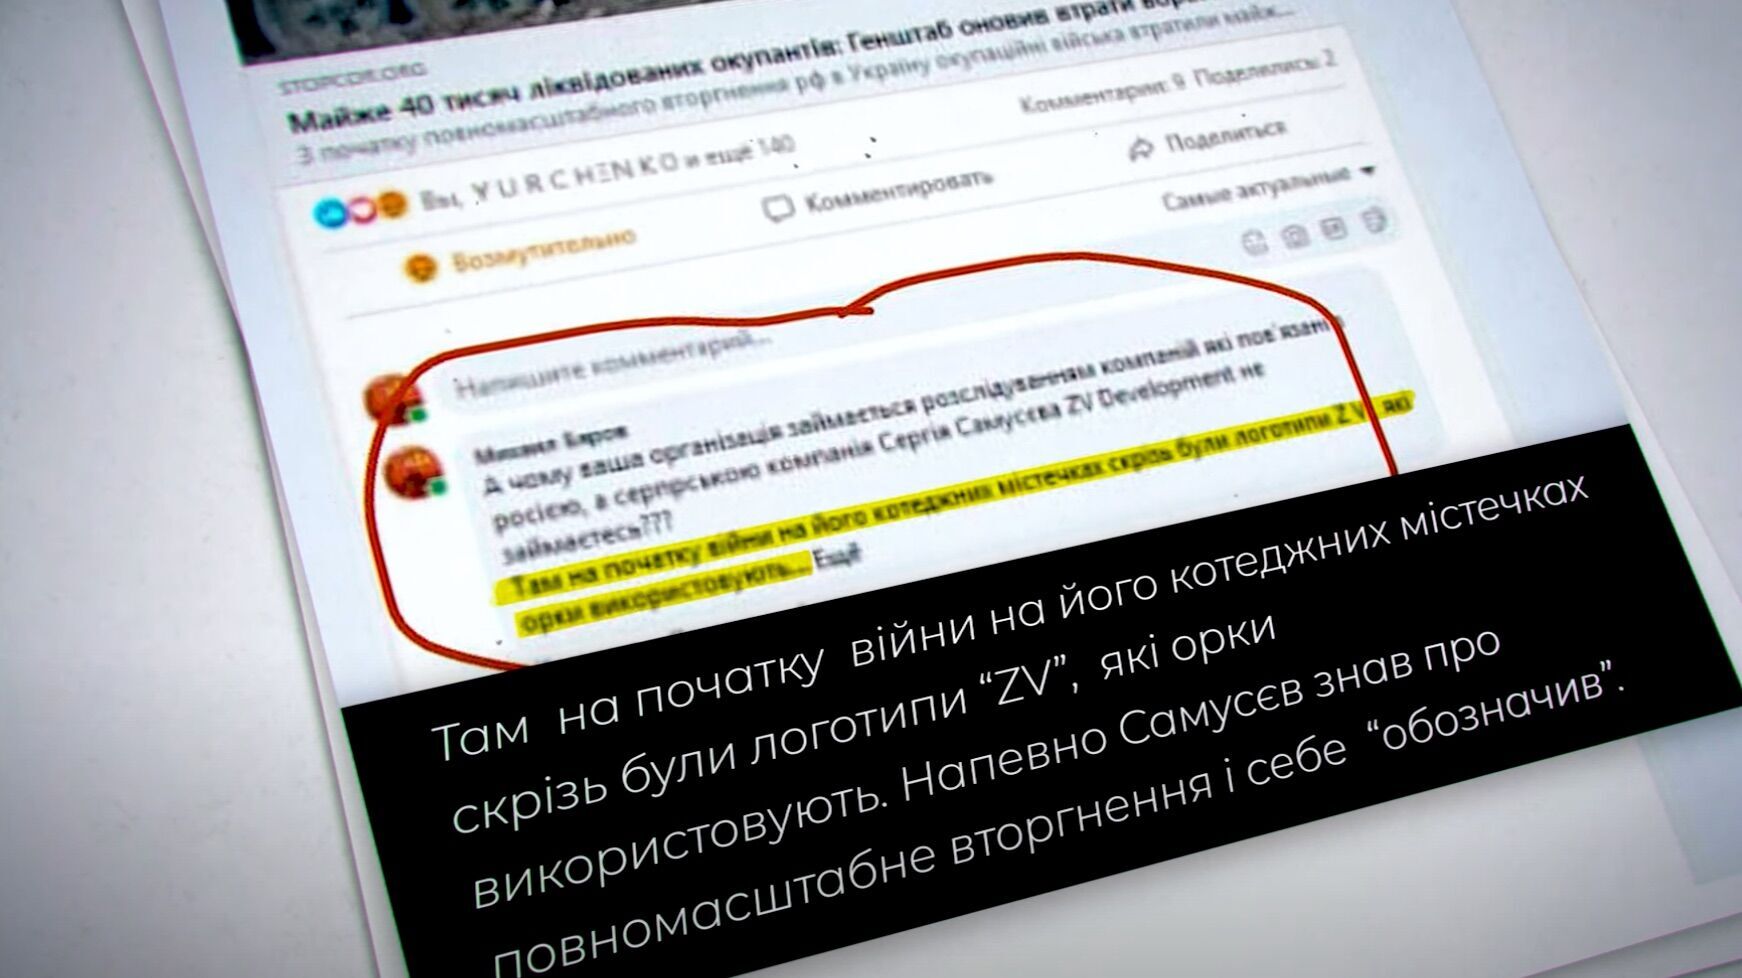 Припускають, що символами ZV Самусєв ''промаркував'' свої об'єкти на Київщині